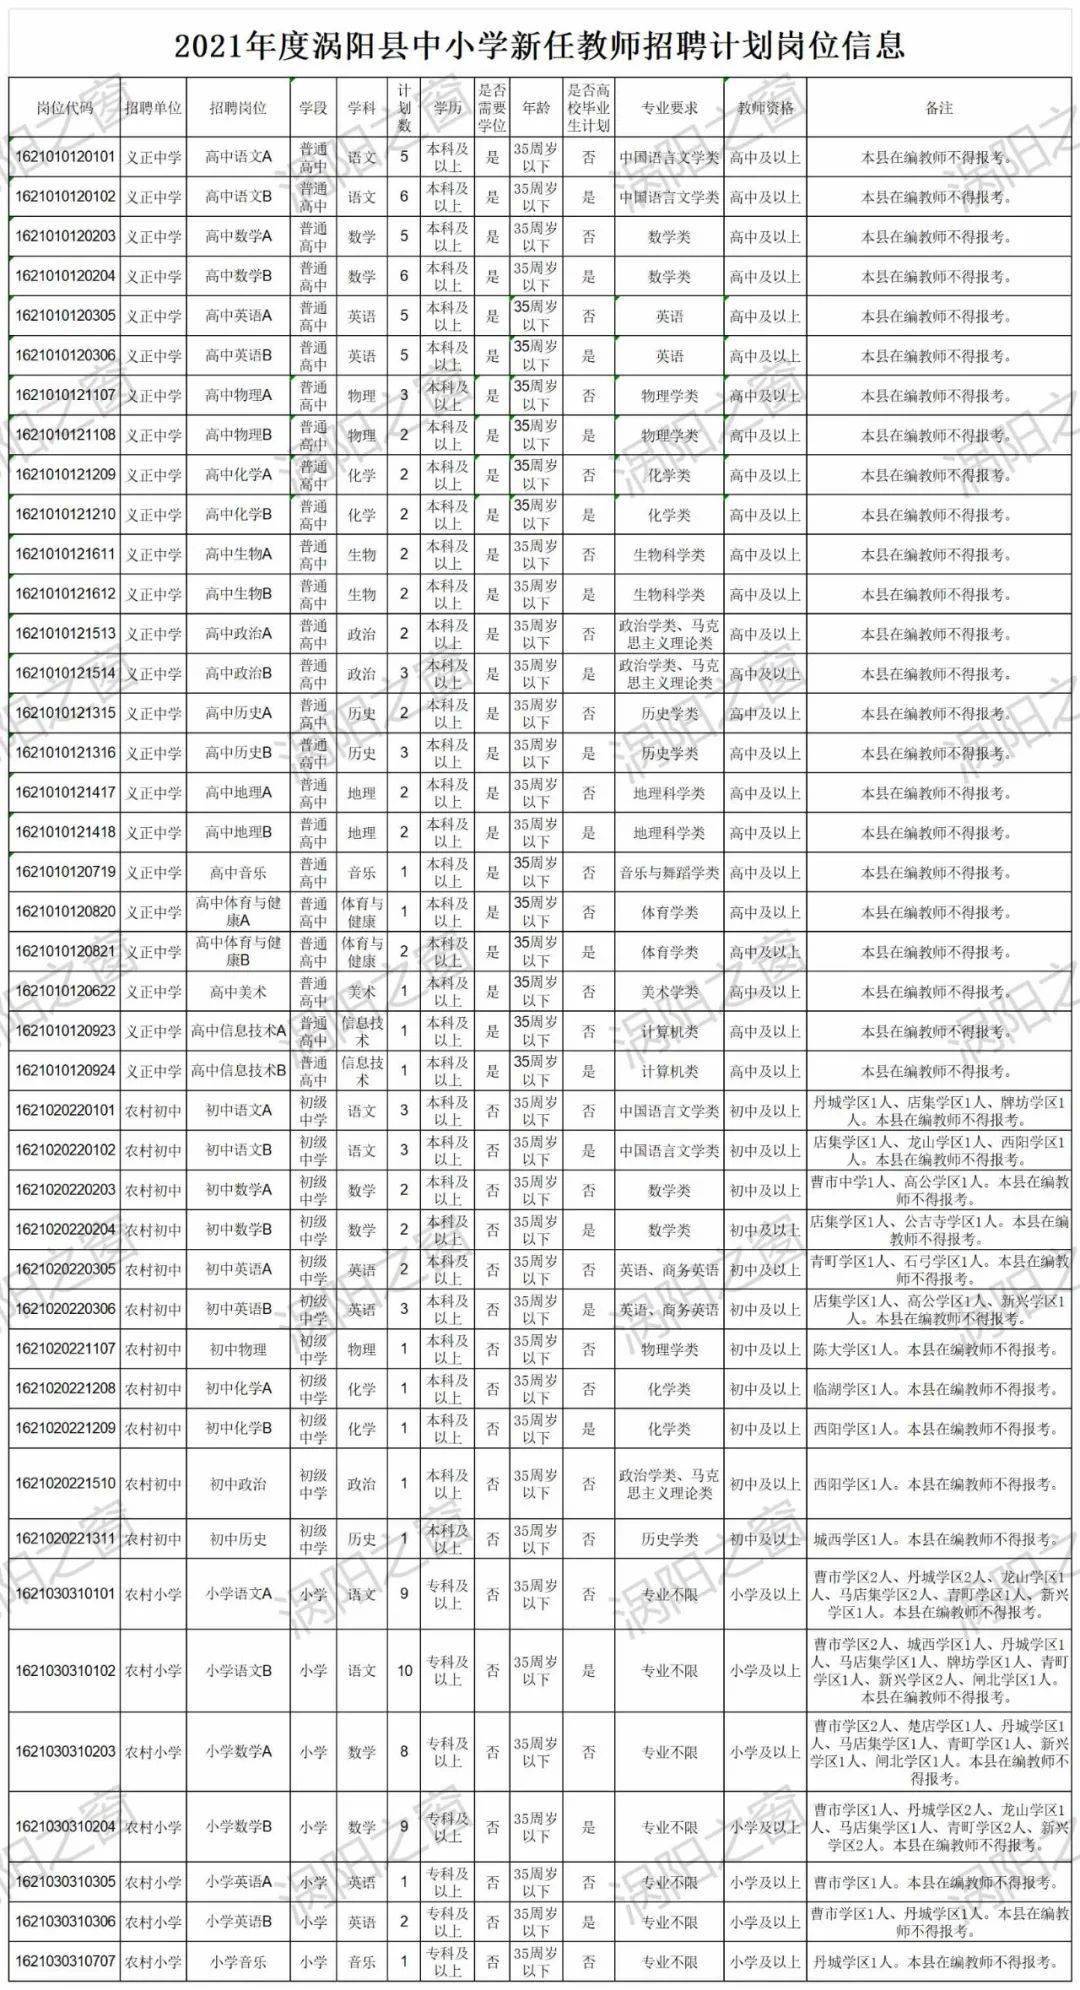 亳州人口2021_2021年亳州市谯城区事业单位招聘76人公告 职位表(2)